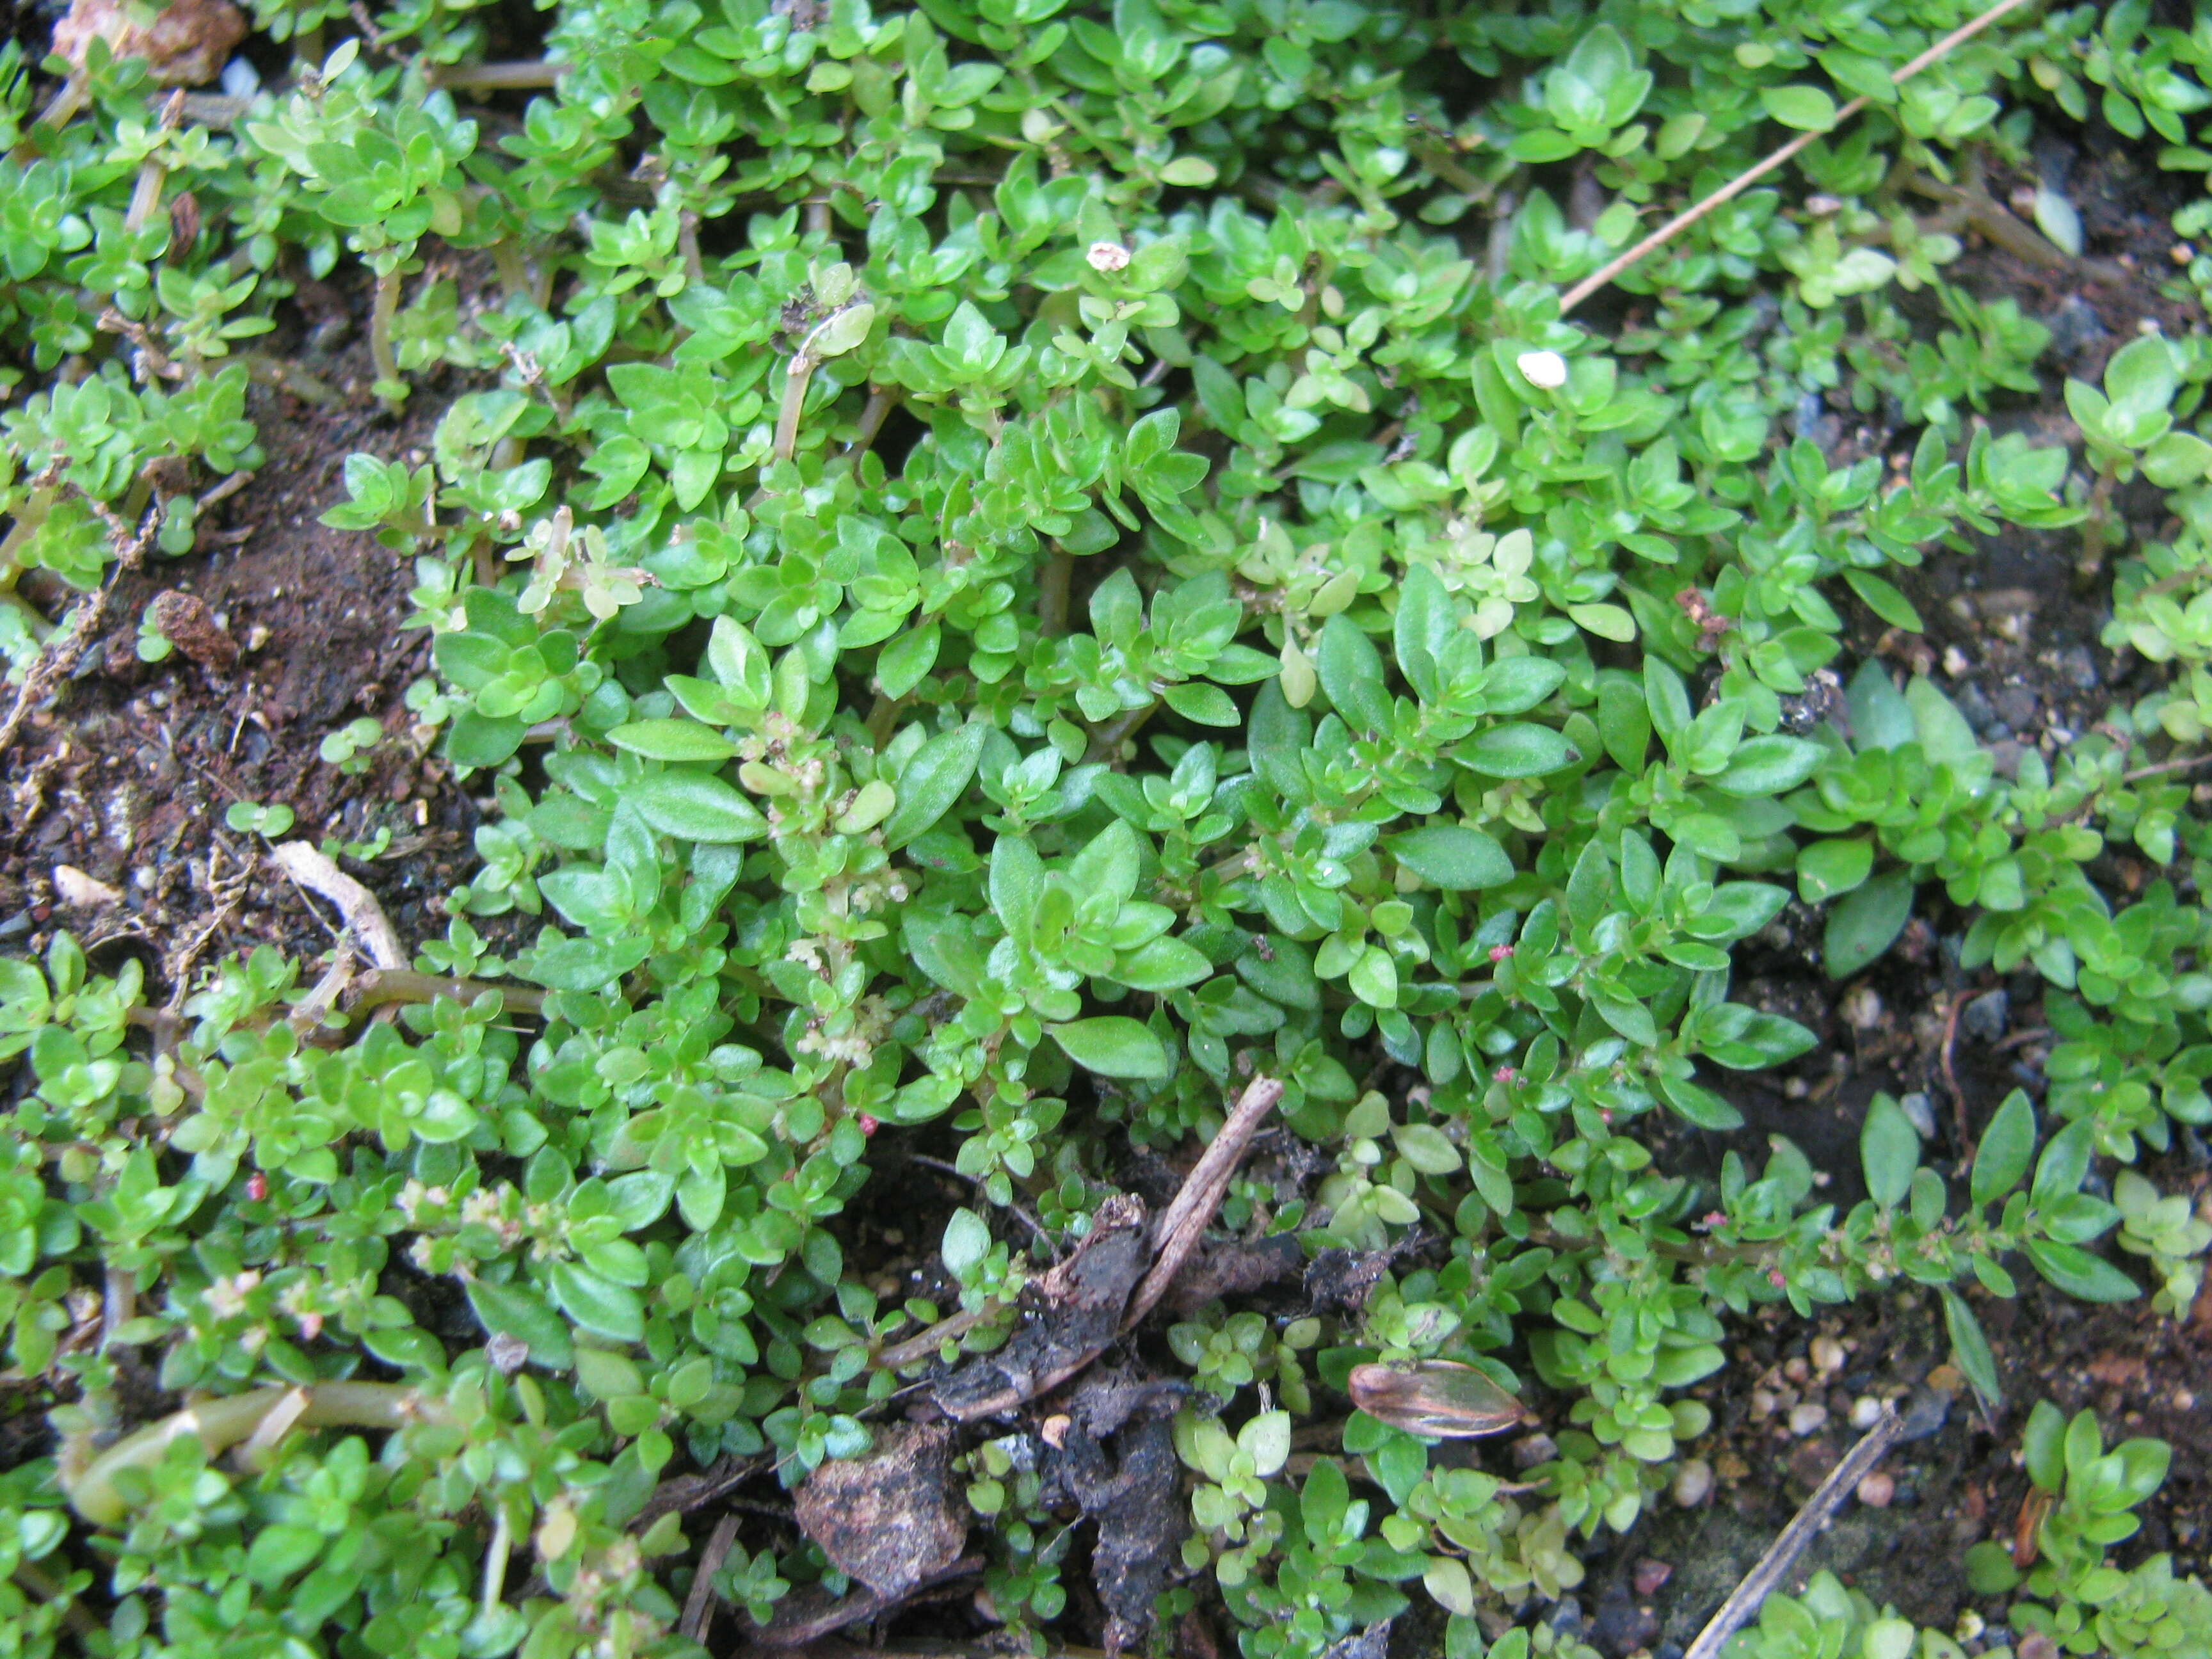 Image of rockweed